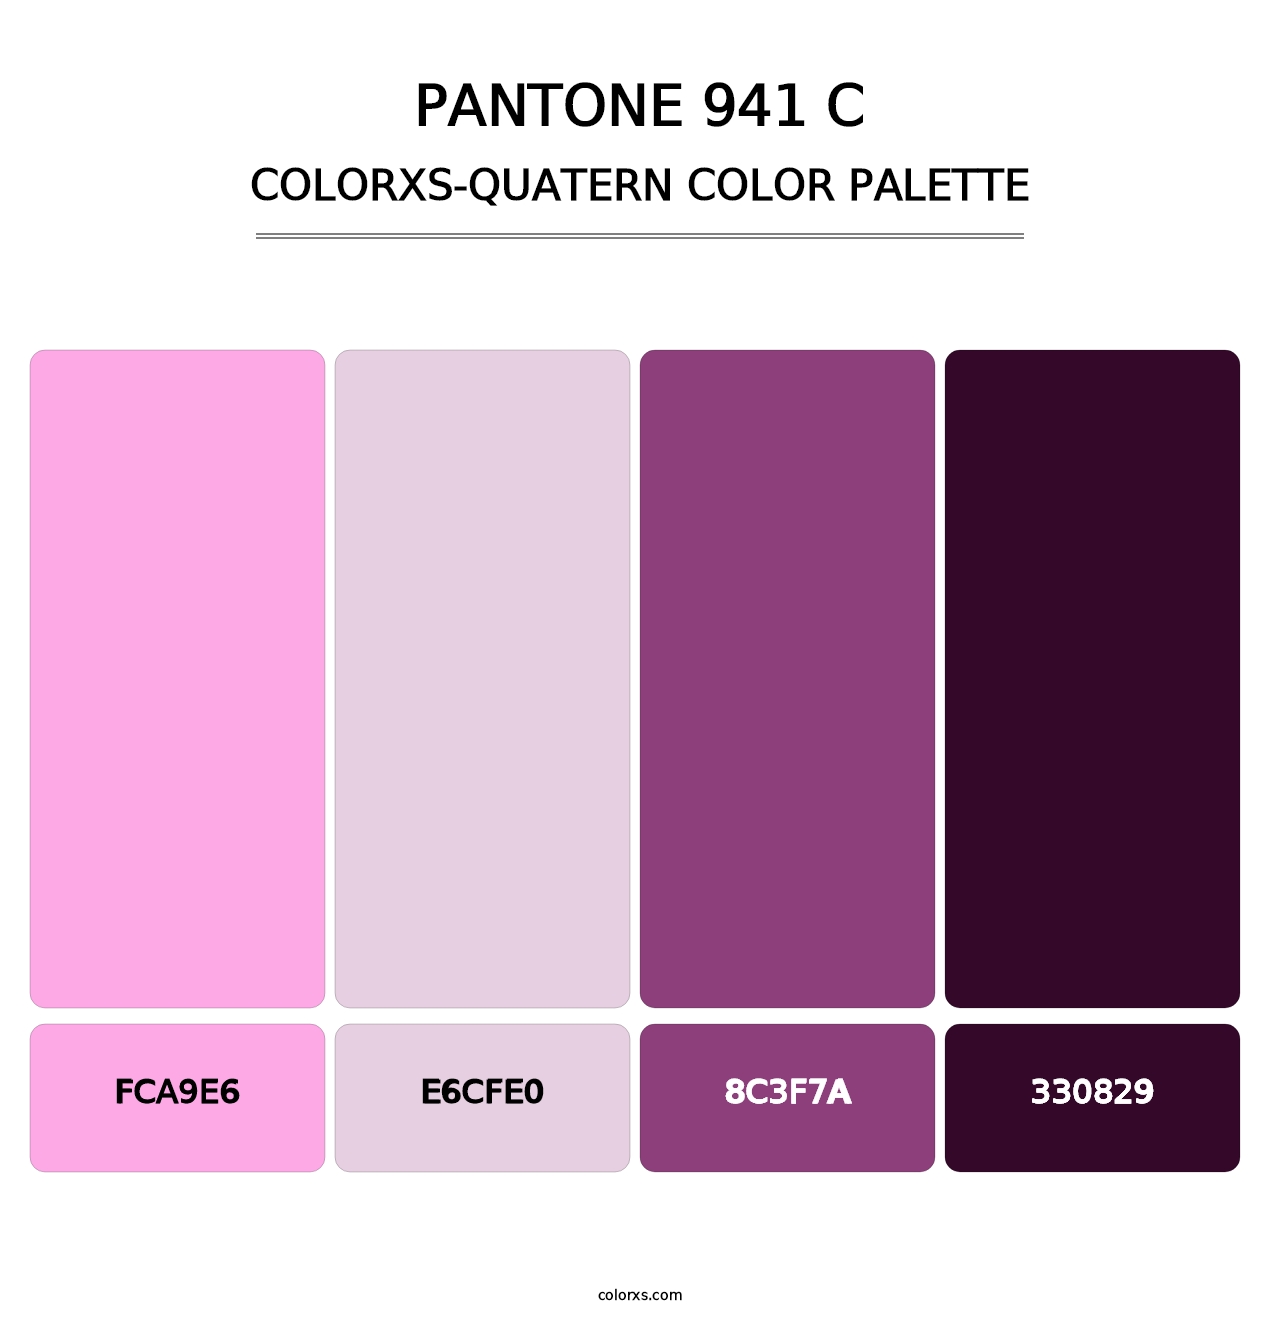 PANTONE 941 C - Colorxs Quatern Palette